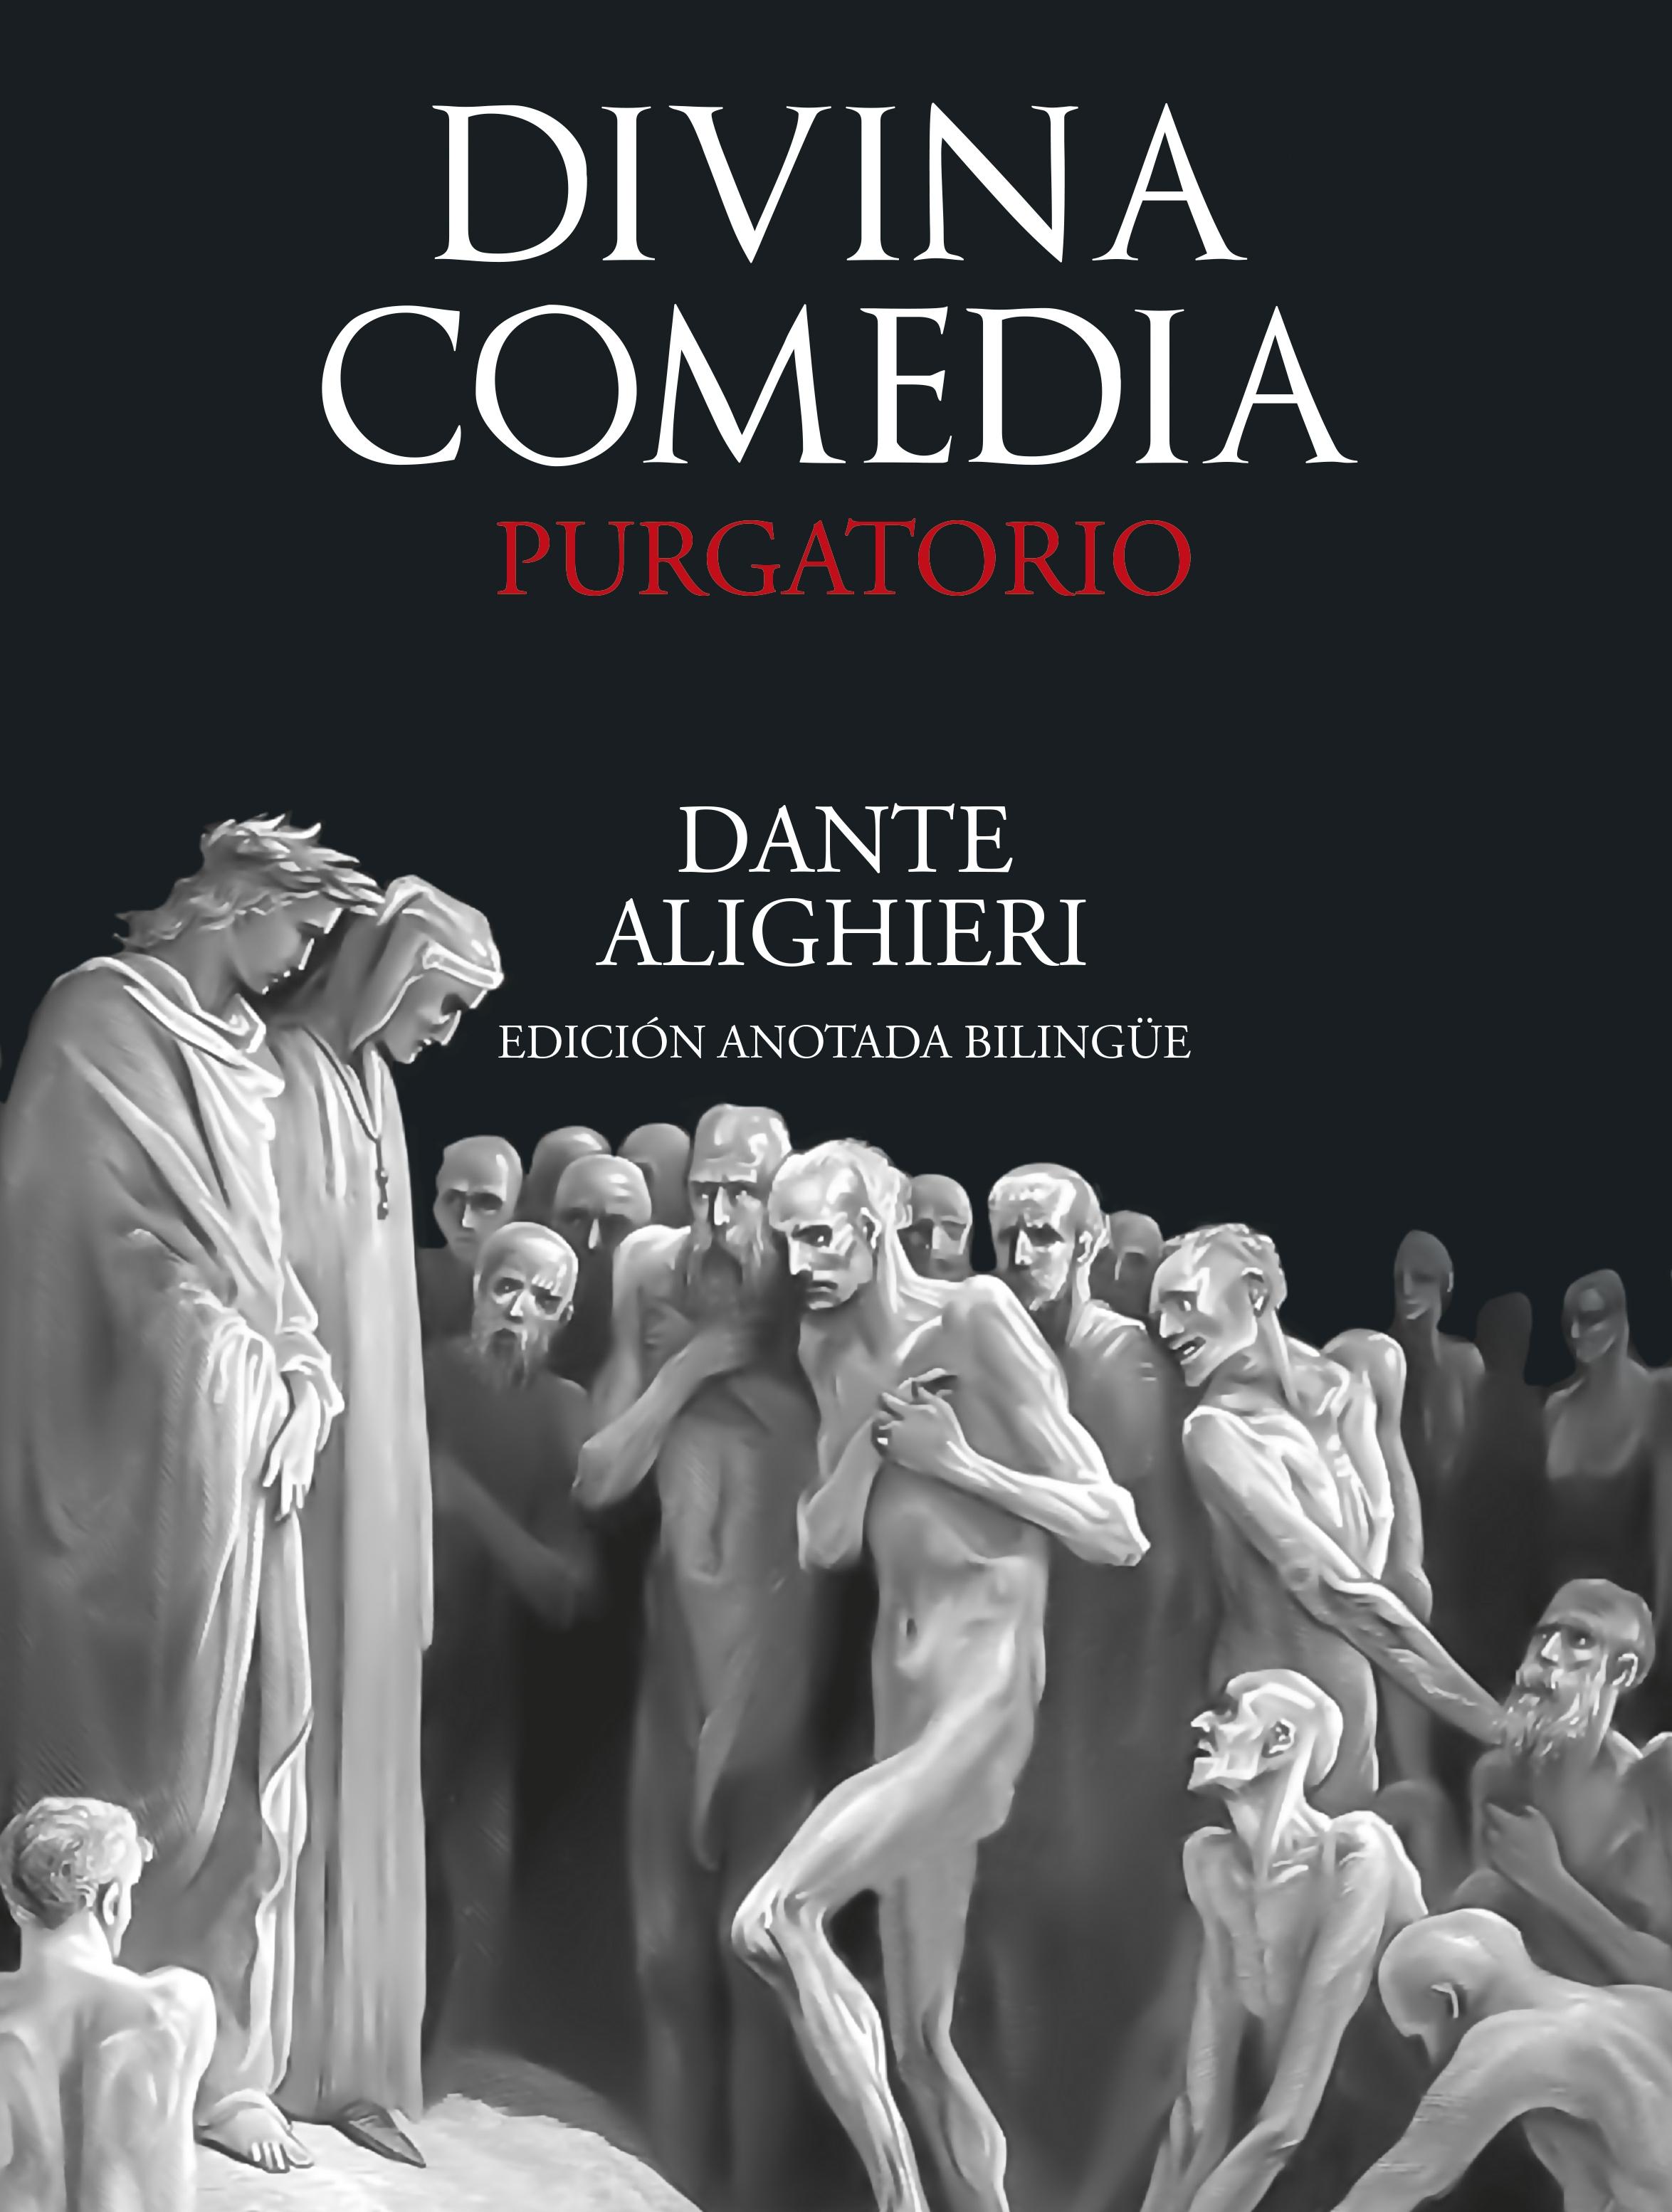 Divina Comedia: Purgatorio "(Edición anotada bilingüe)". 